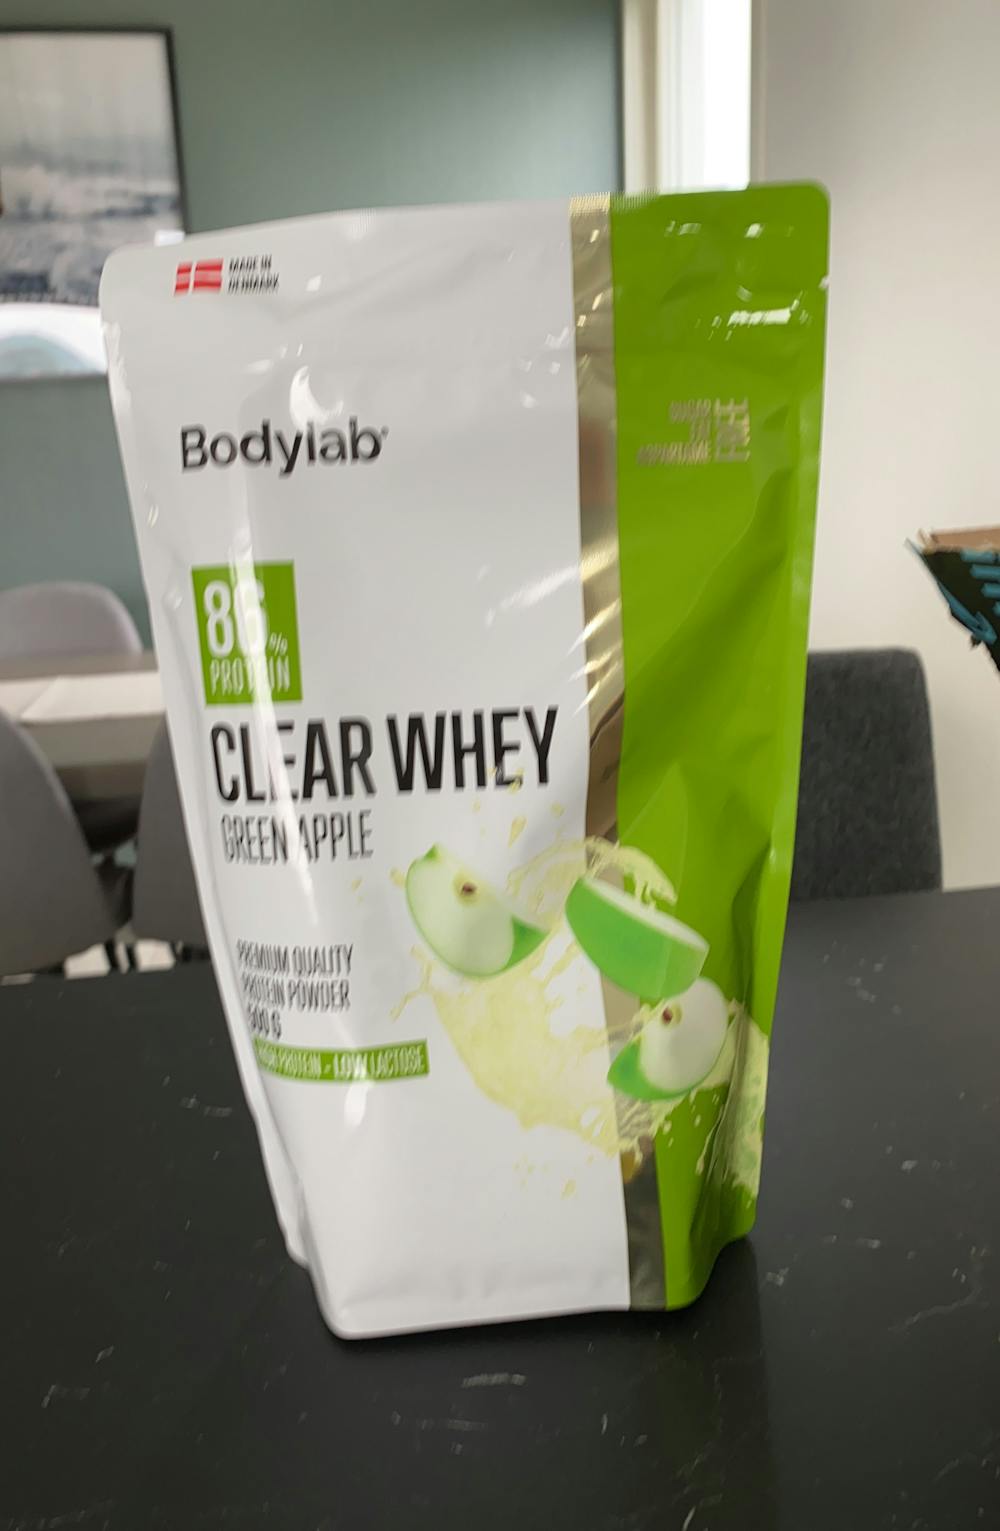 Clear whey, green apple, Bodylab